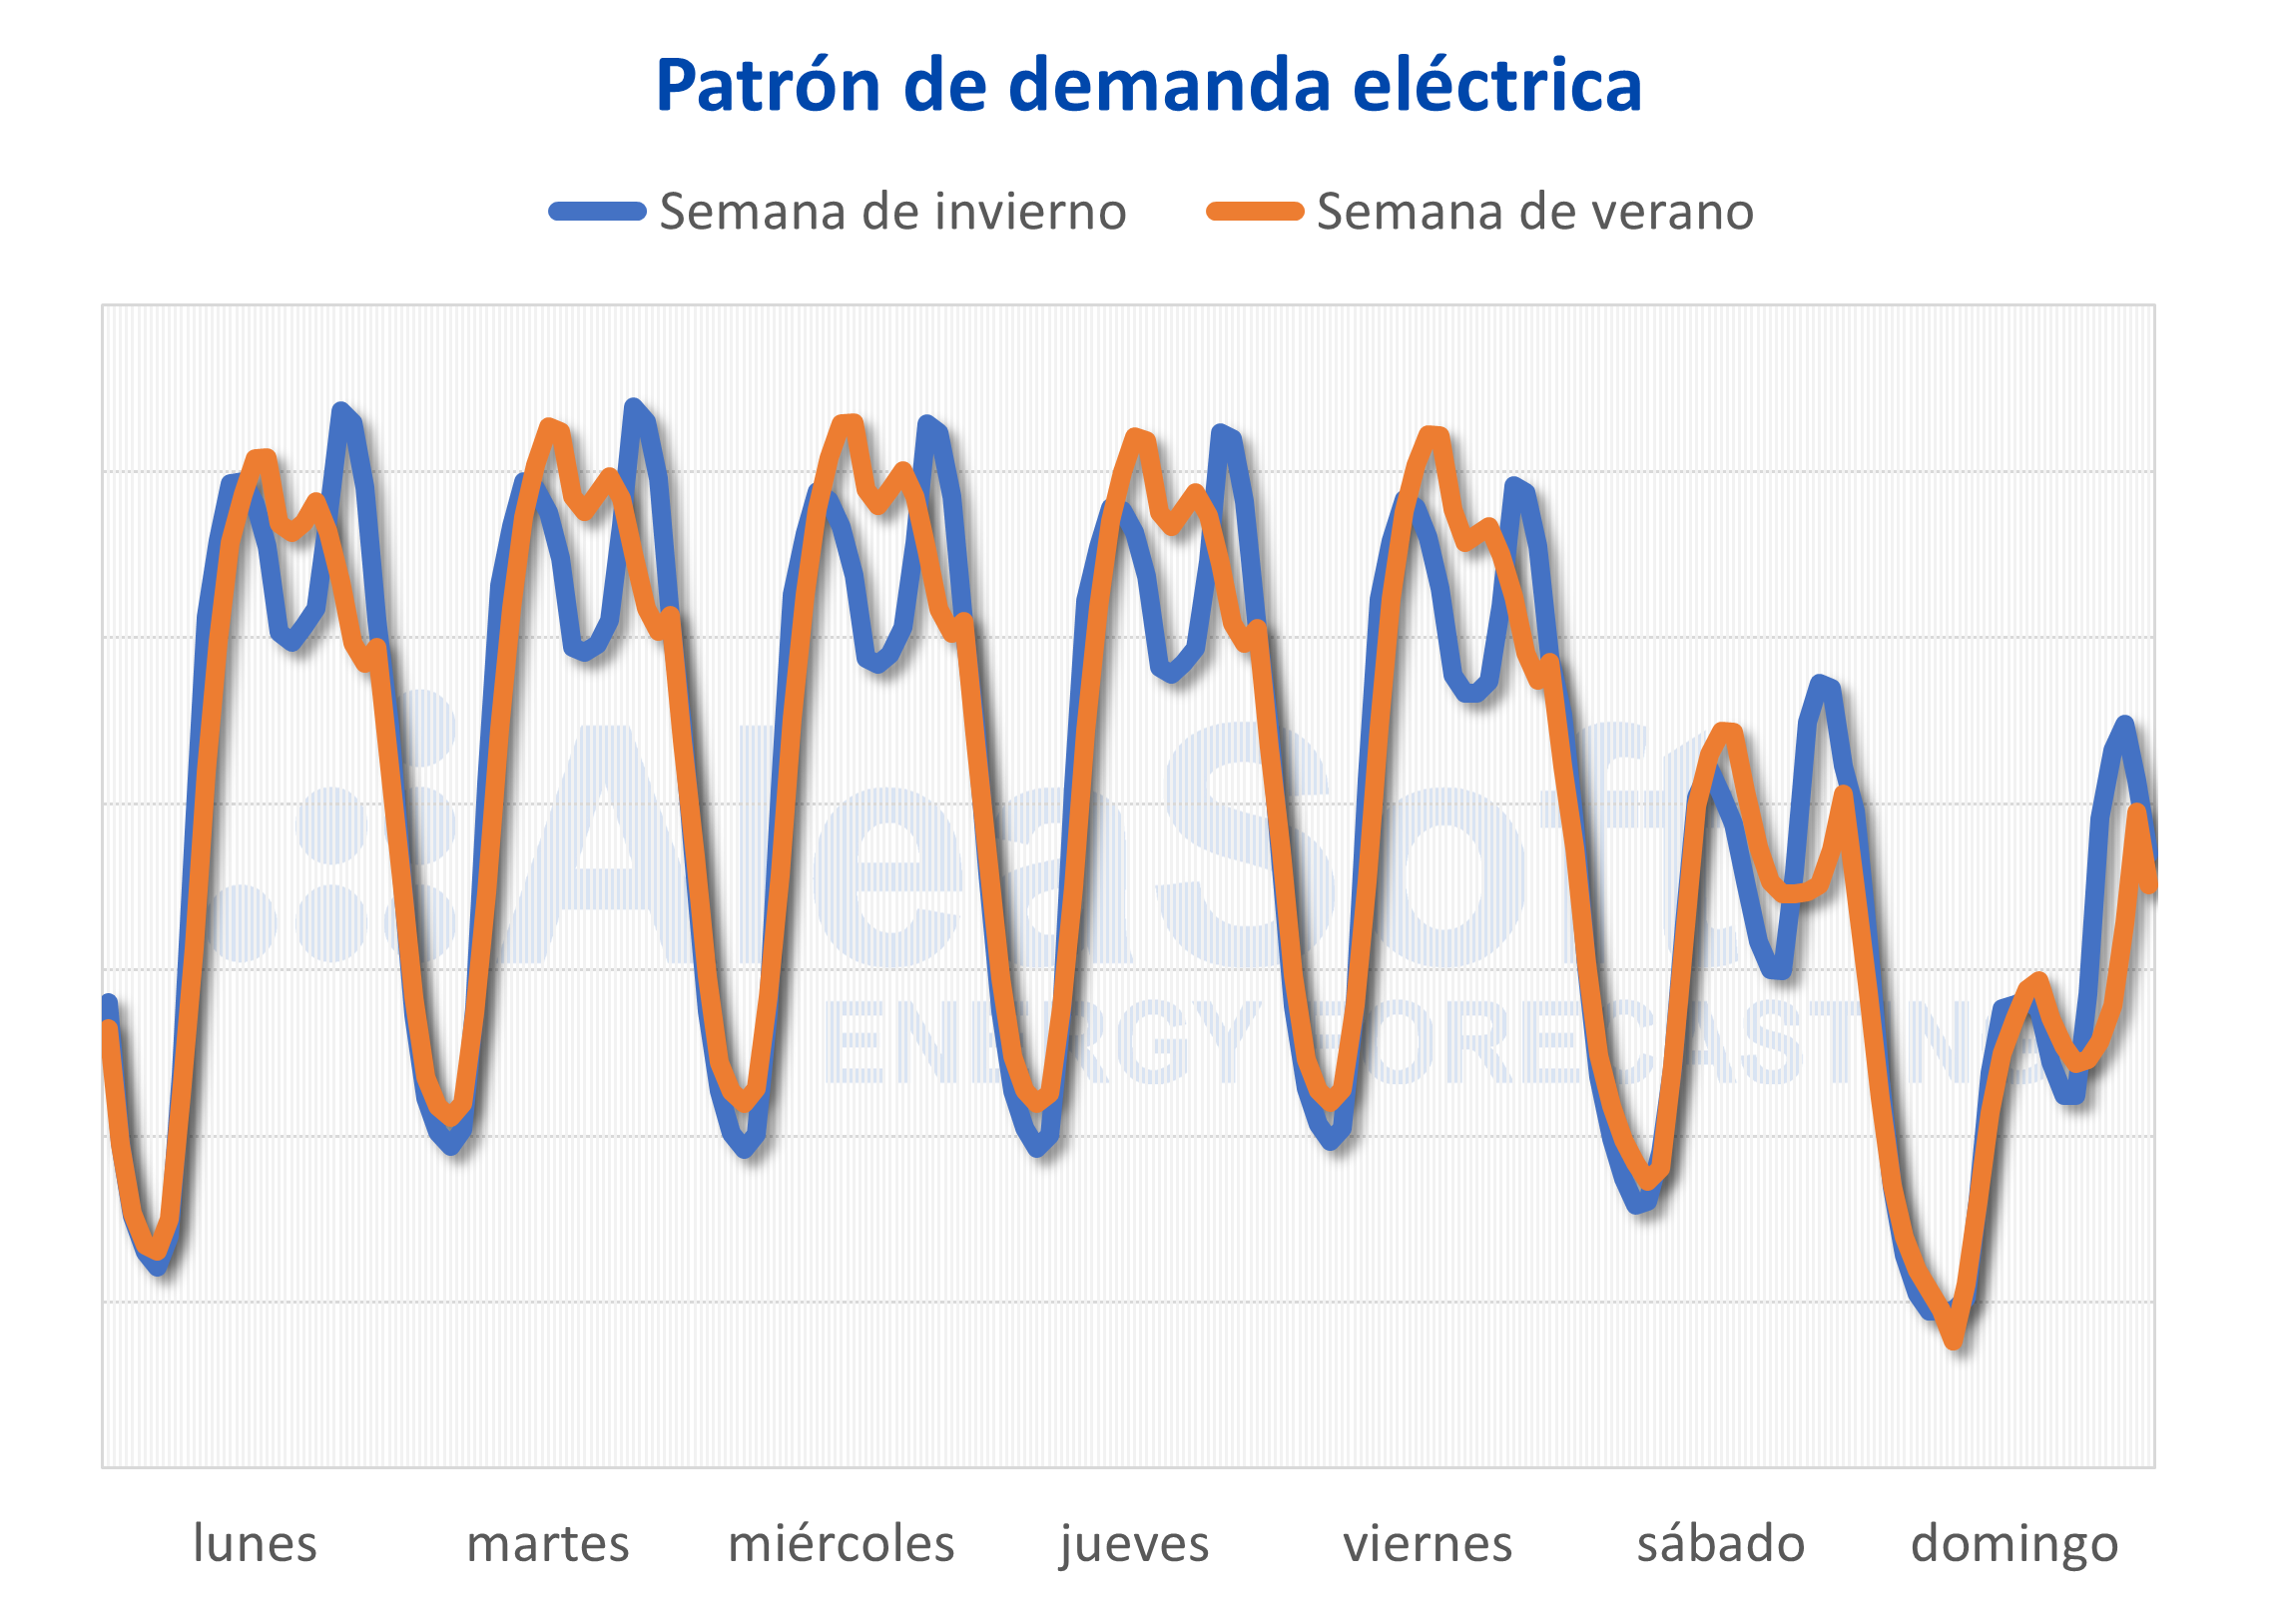 AleaSoft - Patrón de demanda de electricidad España